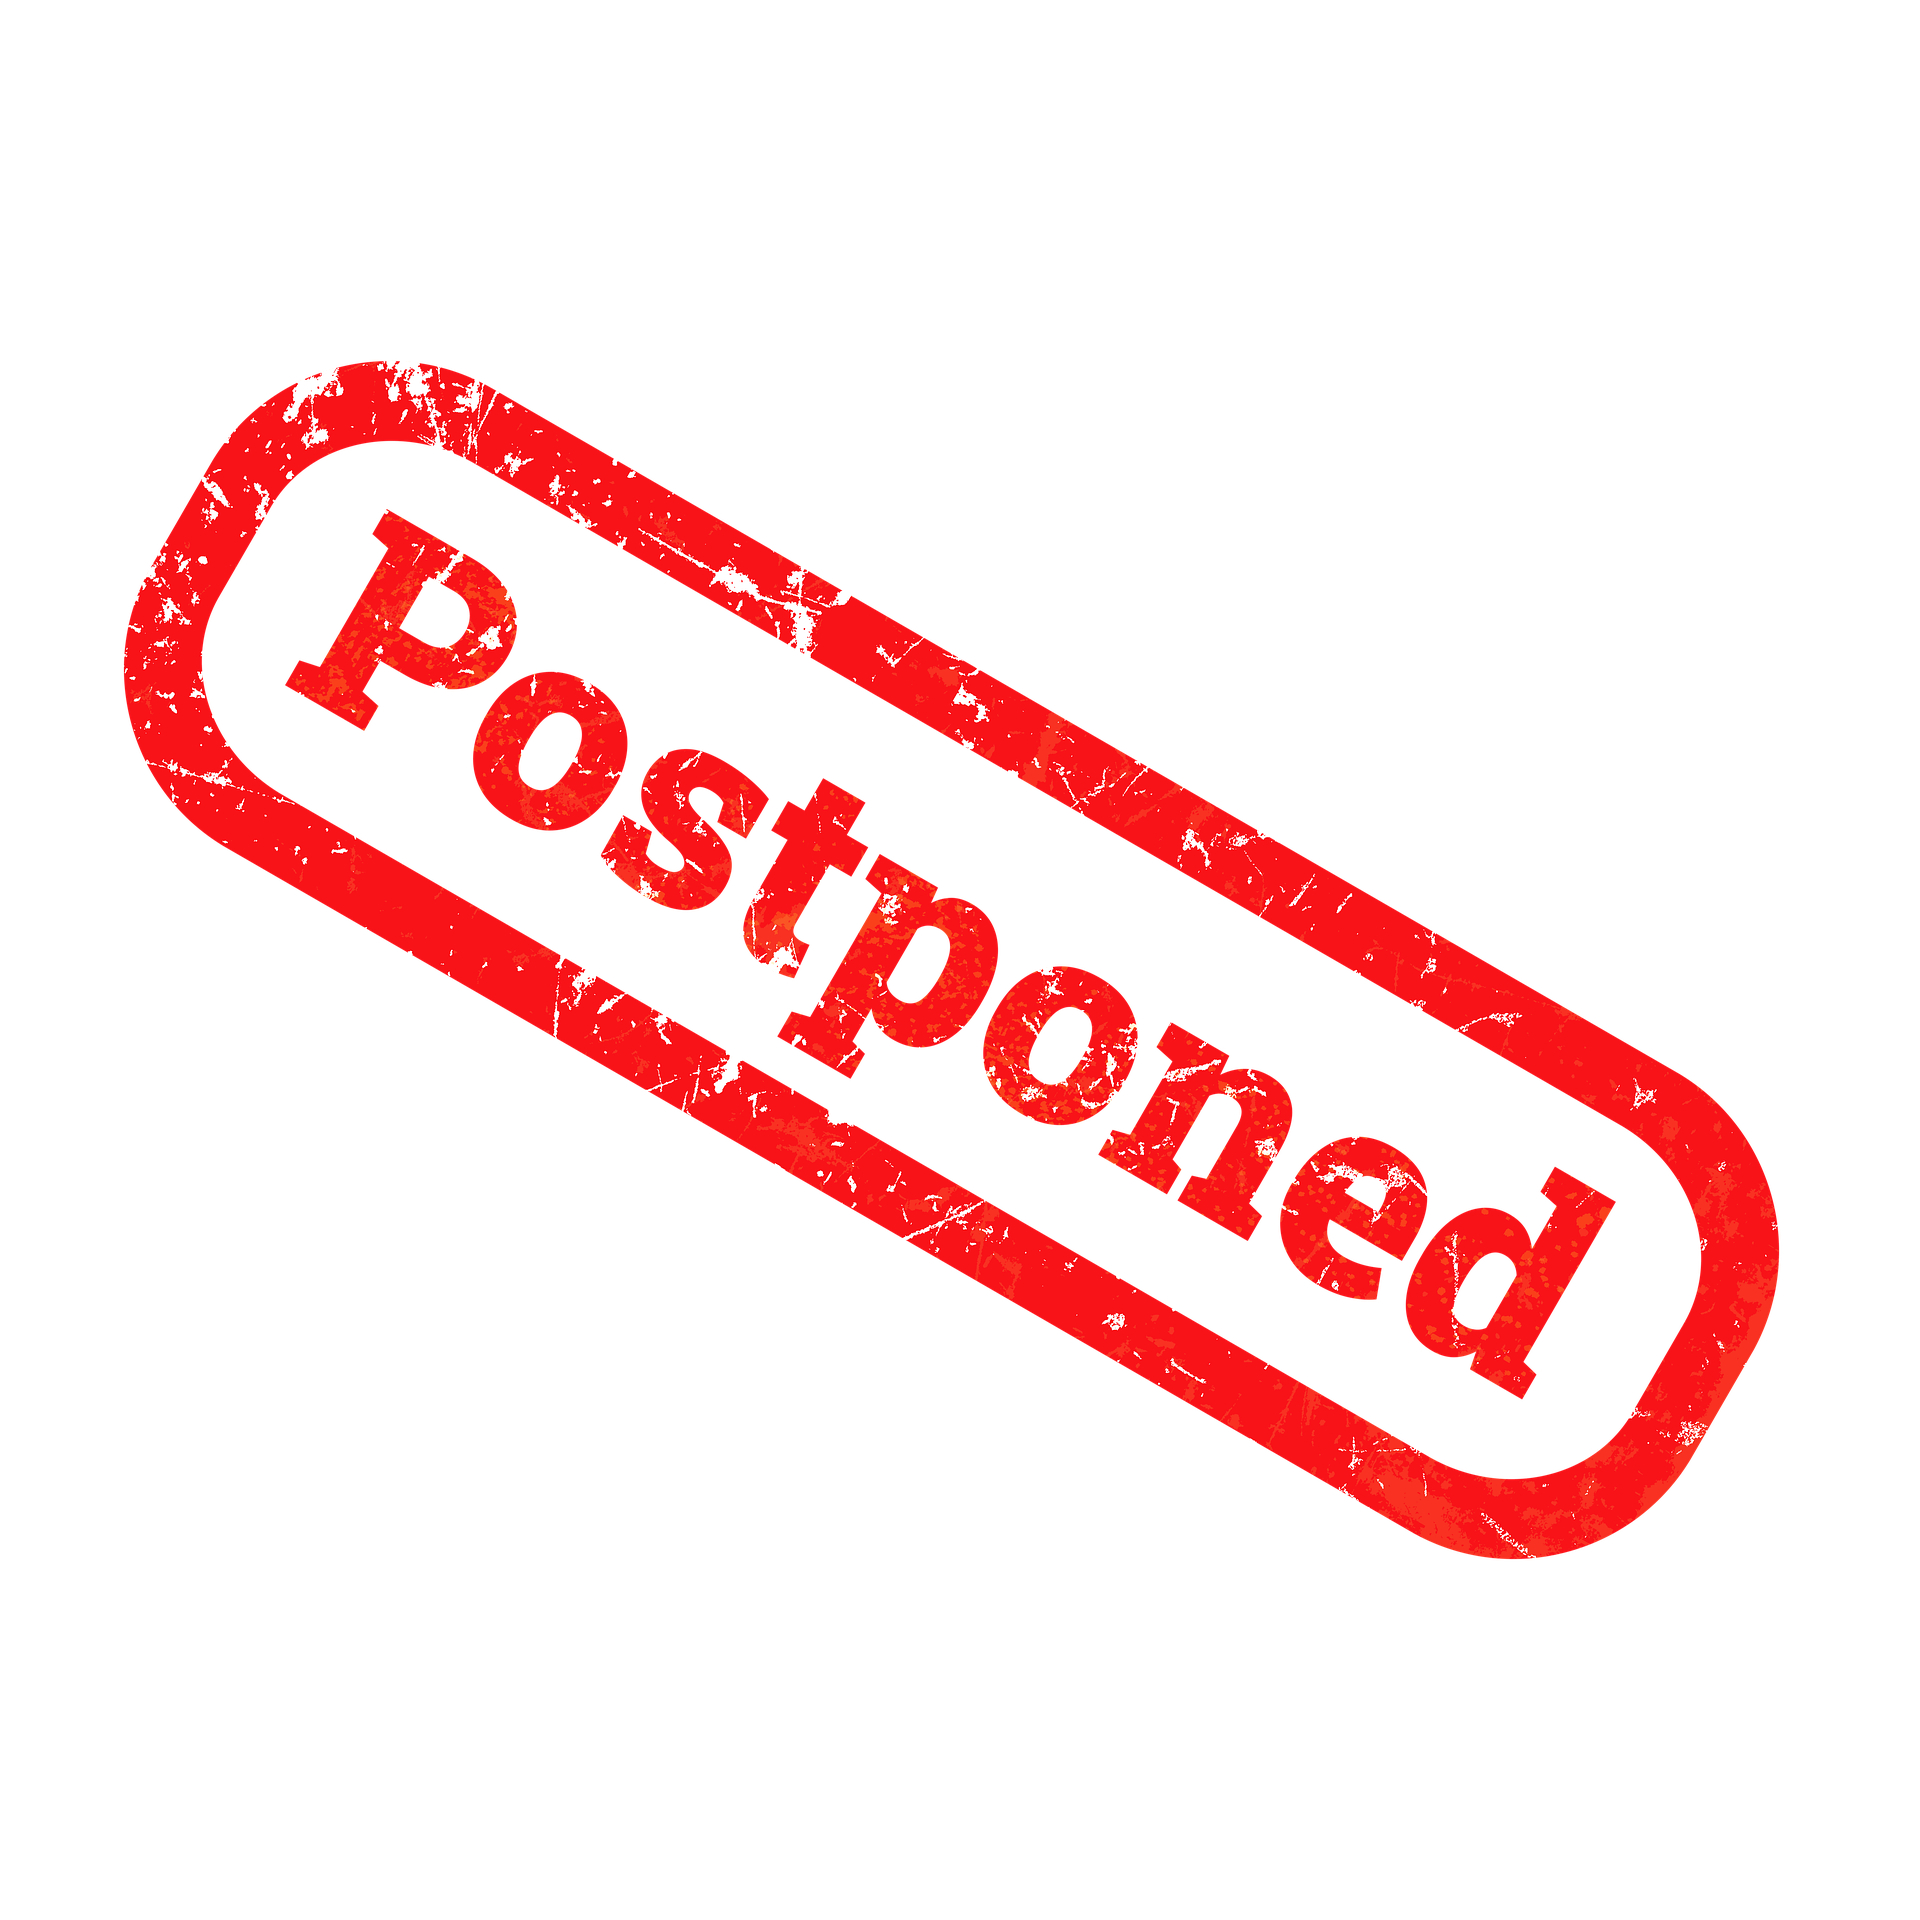 examination postponed